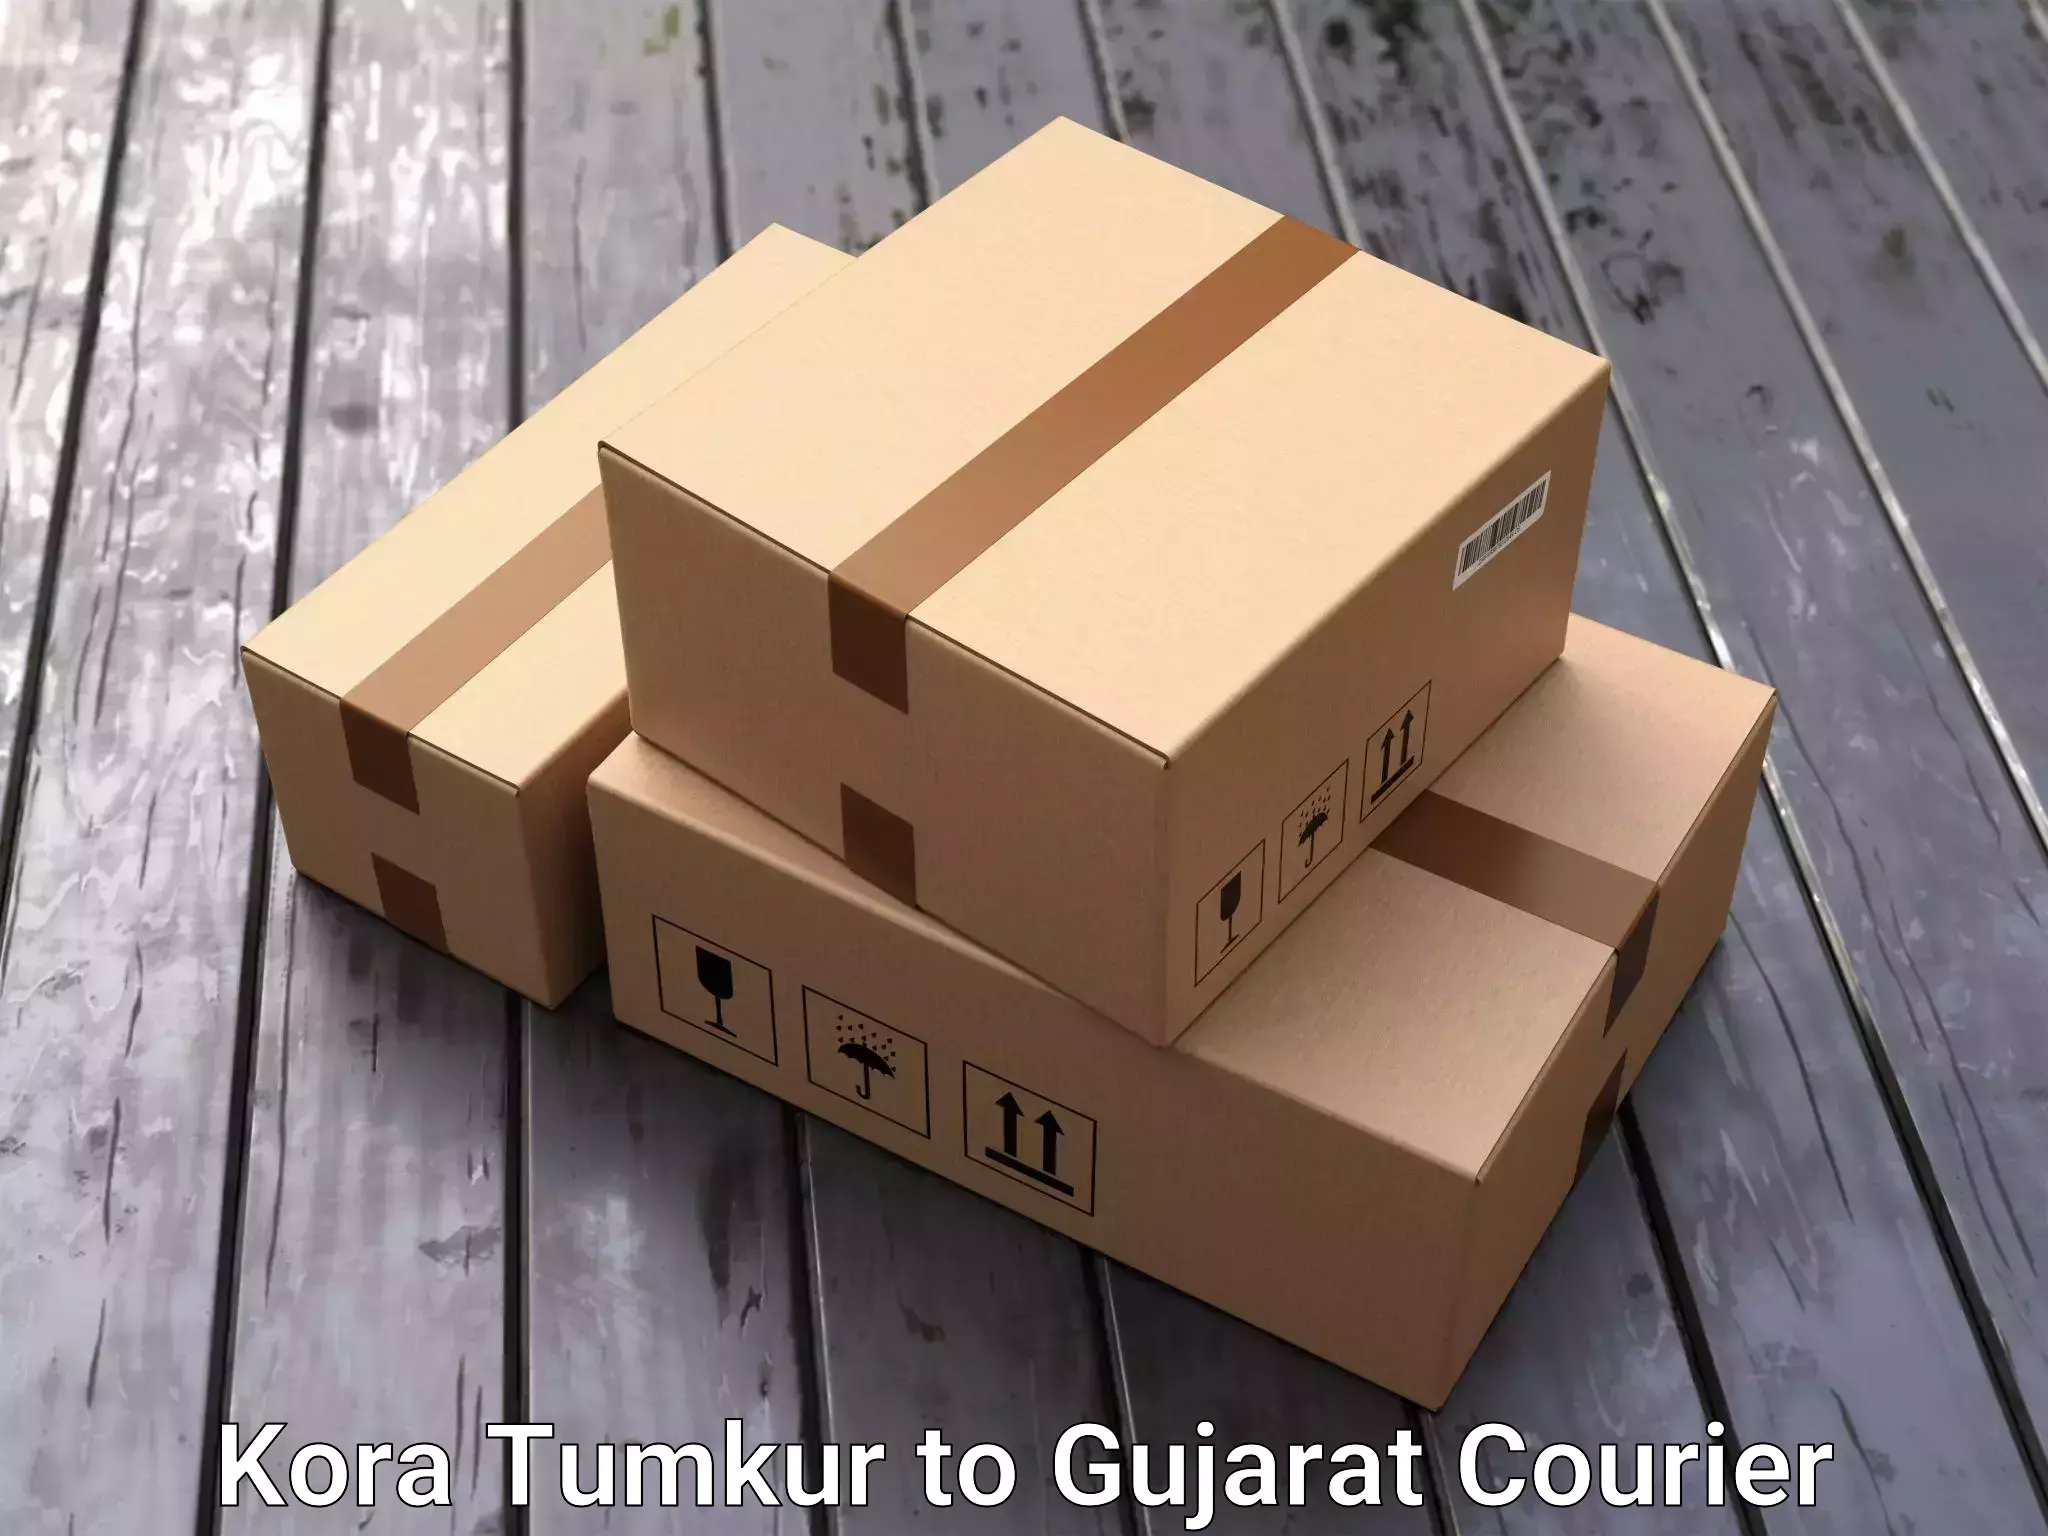 Quality furniture shipping Kora Tumkur to Gujarat